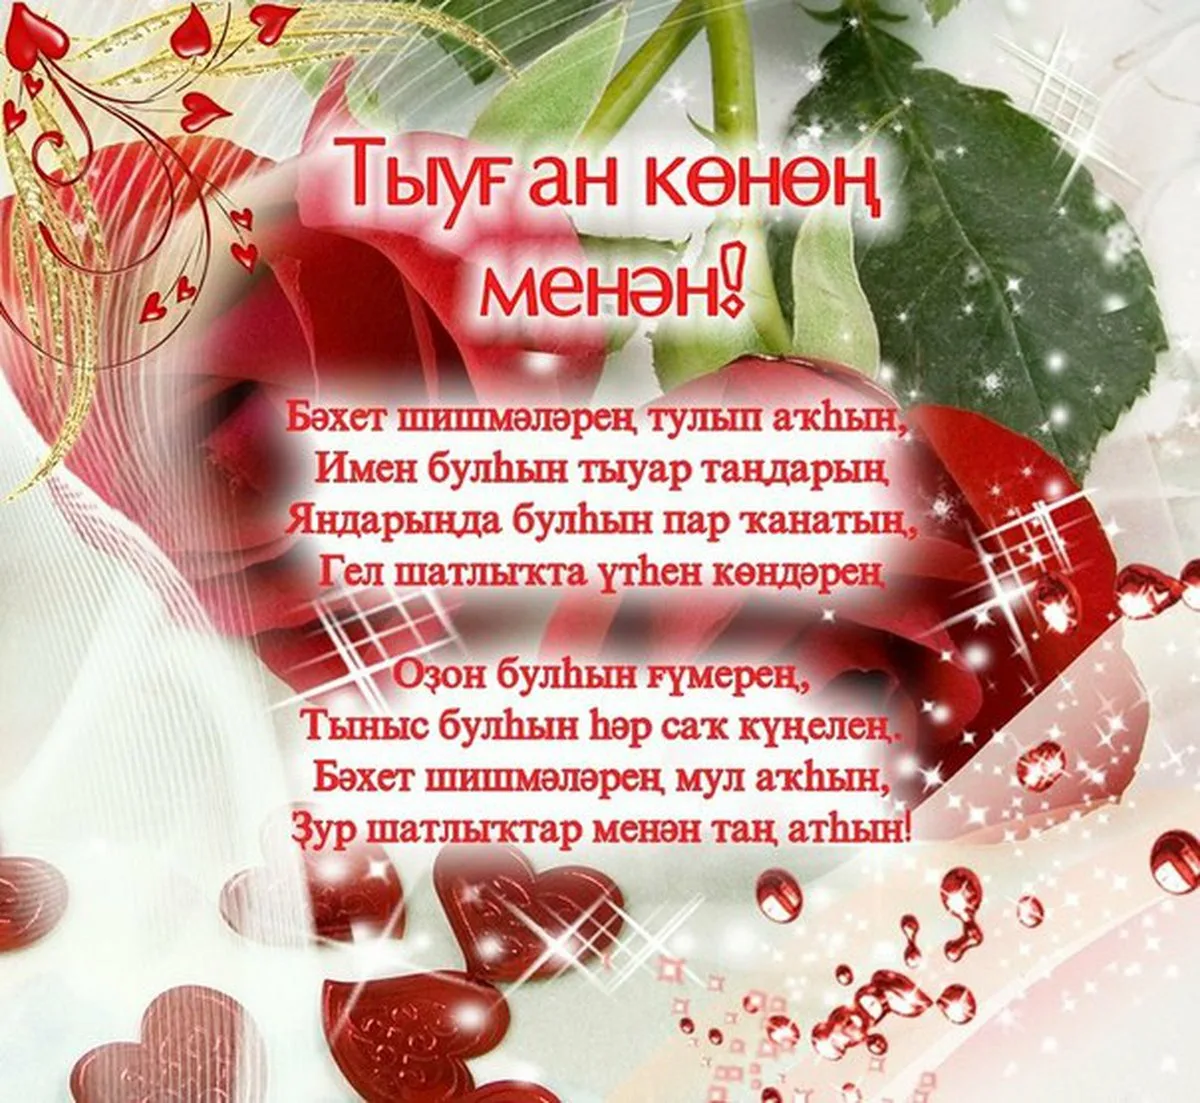 С днем рождения женщине по татарски. Открытка с юбилеем на башкирском языке. Поздравления на башкирском языке. Поздравления с днём рождения на башкирском языке. Пожелания на башкирском языке.